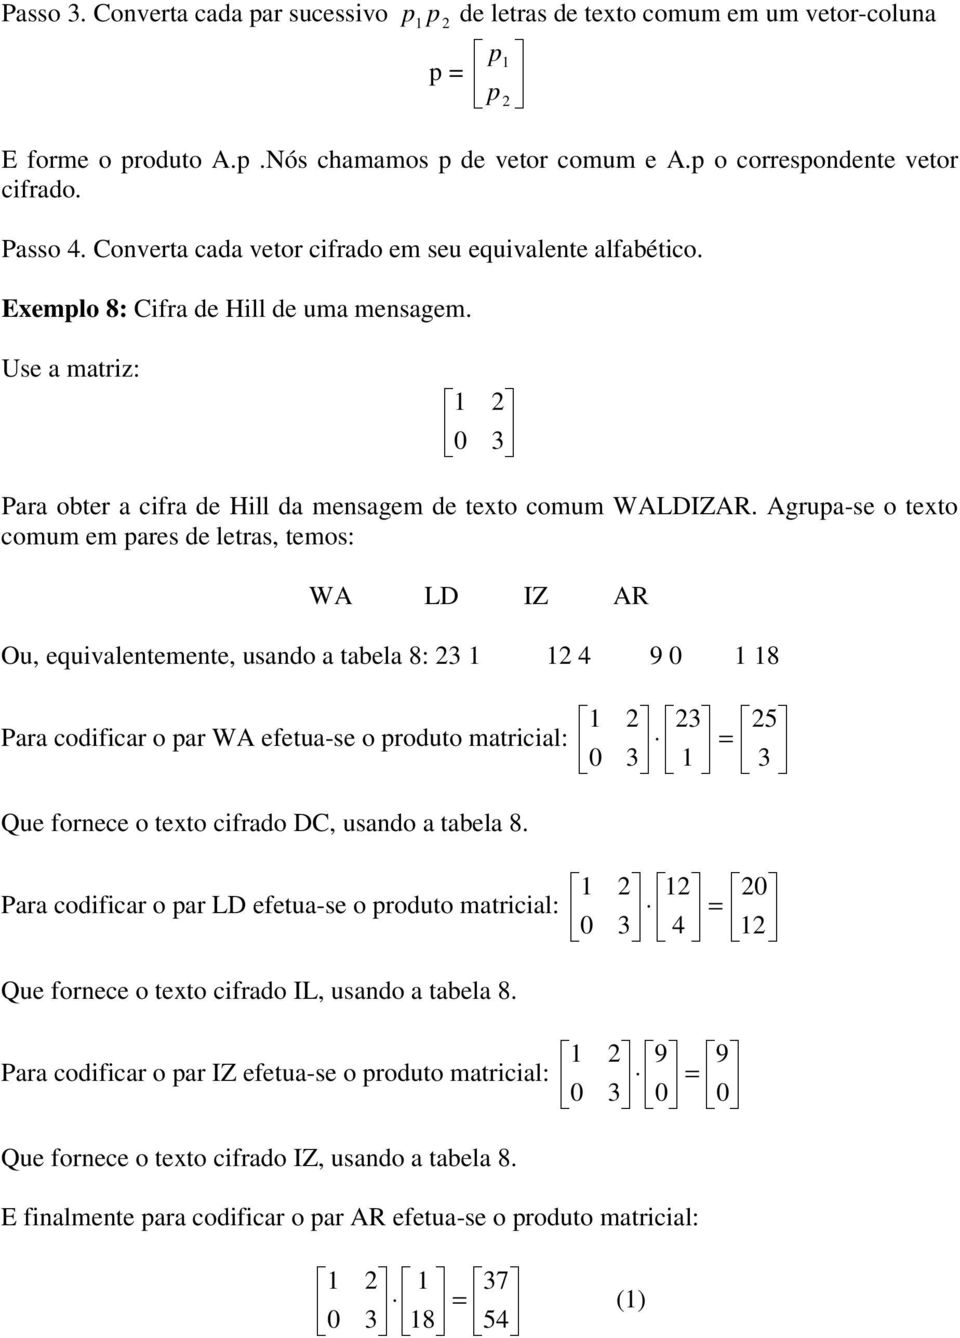 Agrupa-se o texto comum em pares de letras, temos: WA LD IZ AR Ou, equivalentemente, usando a tabela 8: 2 2 4 9 0 8 Para codificar o par WA efetua-se o produto matricial: Que fornece o texto cifrado